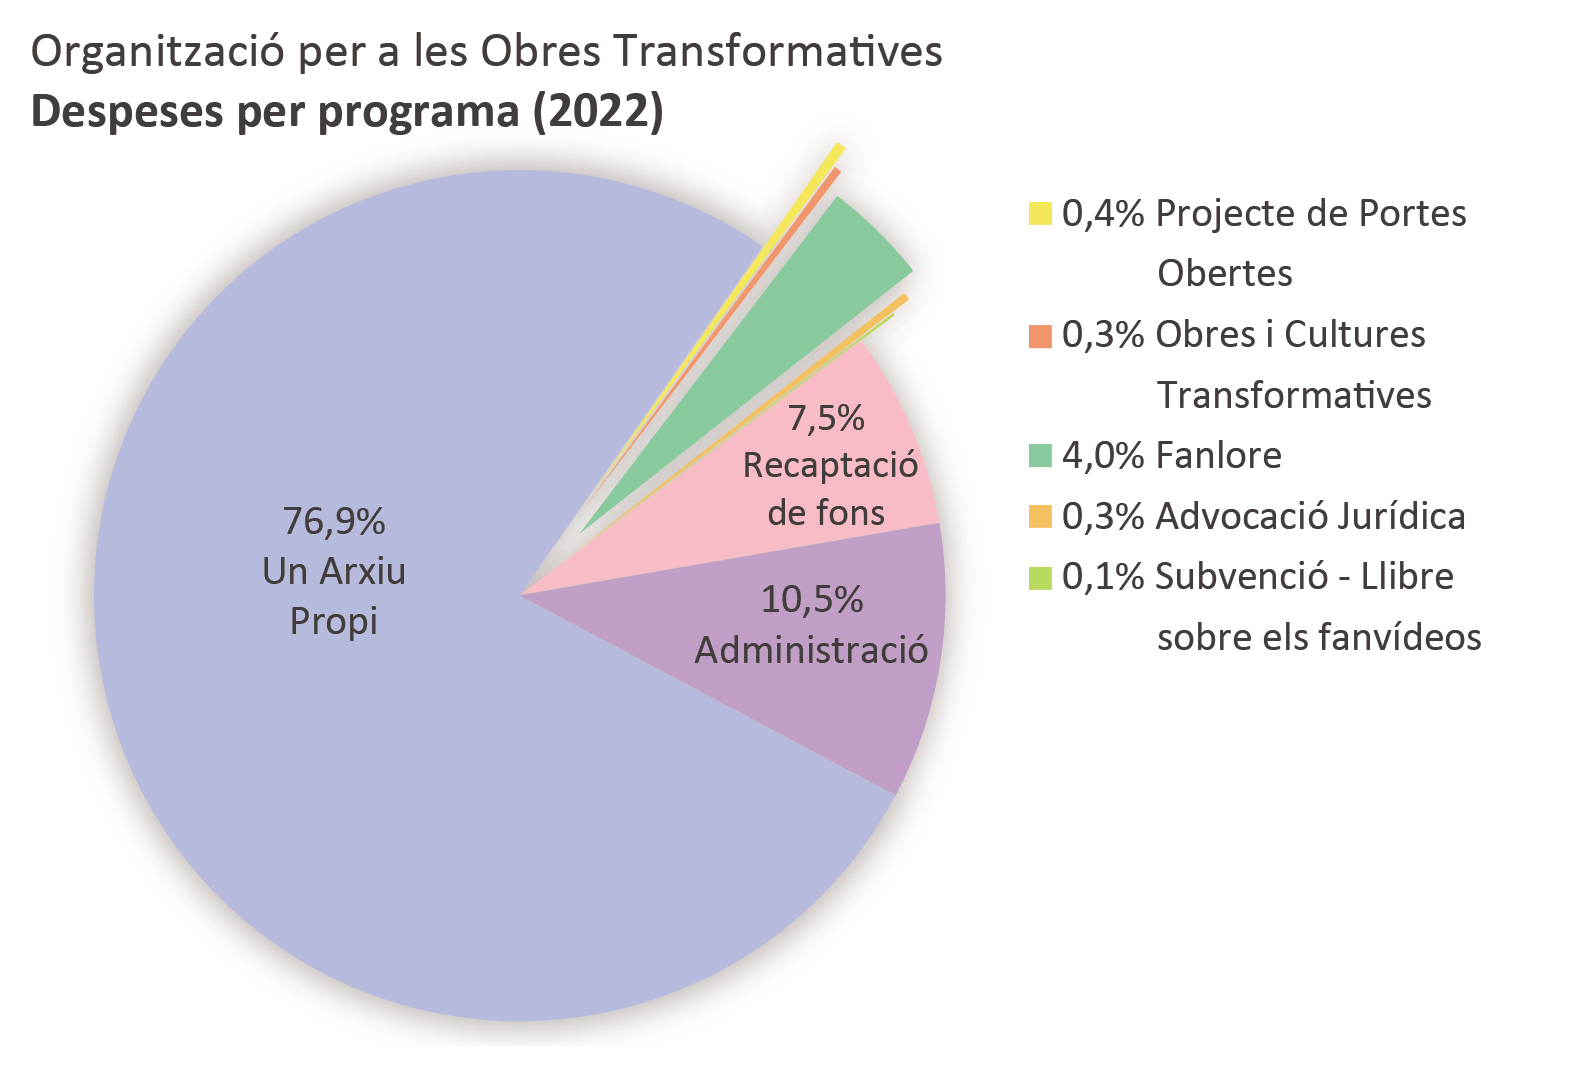 Despeses per programa: Archive of Our Own: 76,9%. Open Doors: 0,4%. Obres i Cultures Transformatives: 0,3%. Fanlore: 4,0%. Advocació Jurídica: 0,3%. Subvenció - Llibre sobre els fanvídeos: 0,1%. Administració: 10,5%. Recaptació de fons: 7,5%.